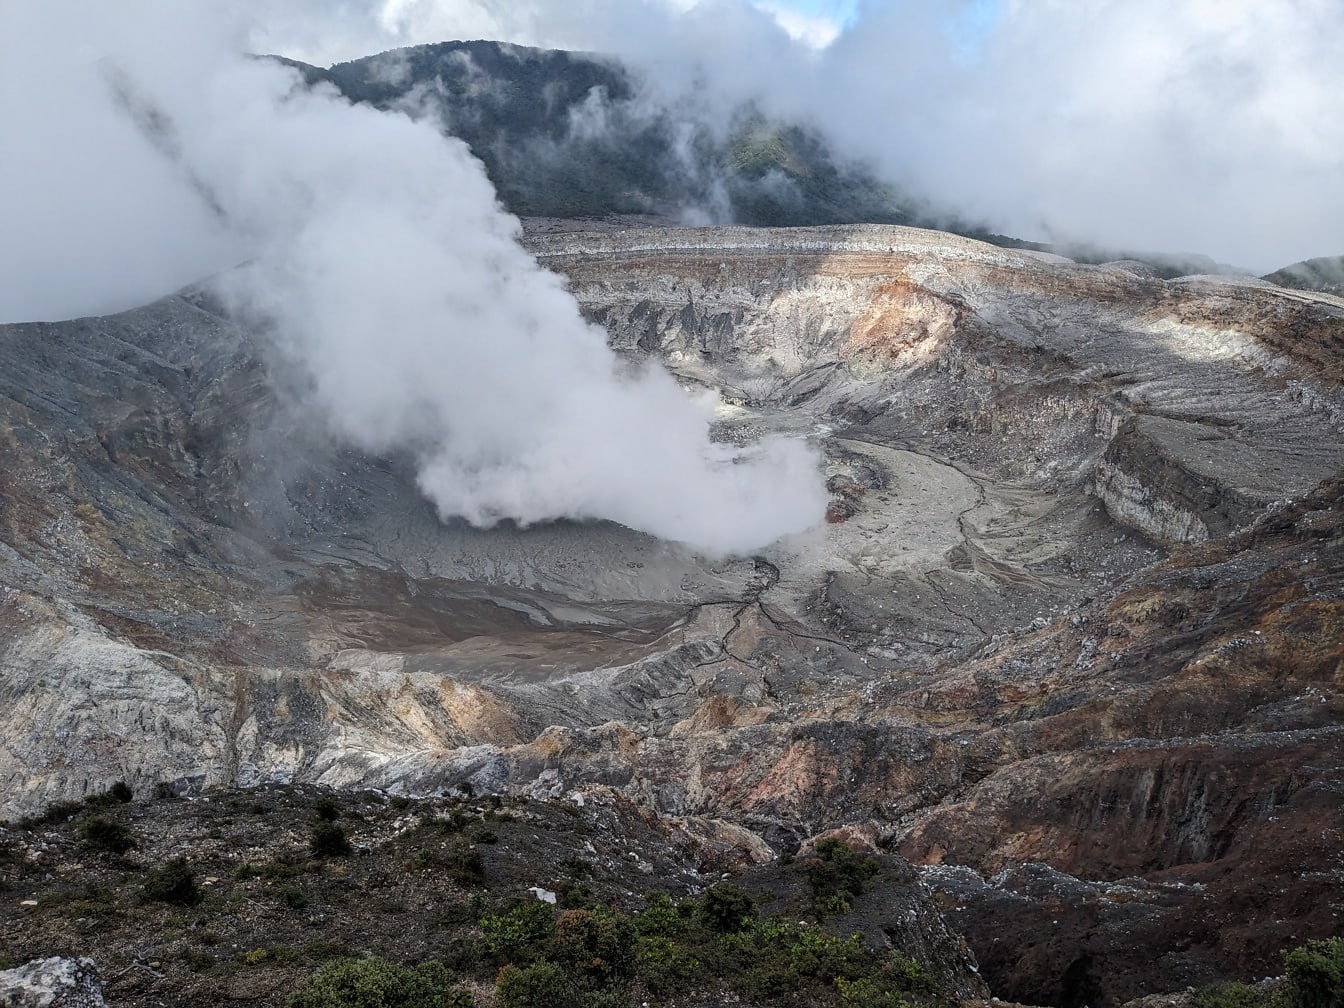 Paesaggio del cratere del vulcano Poás in Costa Rica con fumo che esce da esso